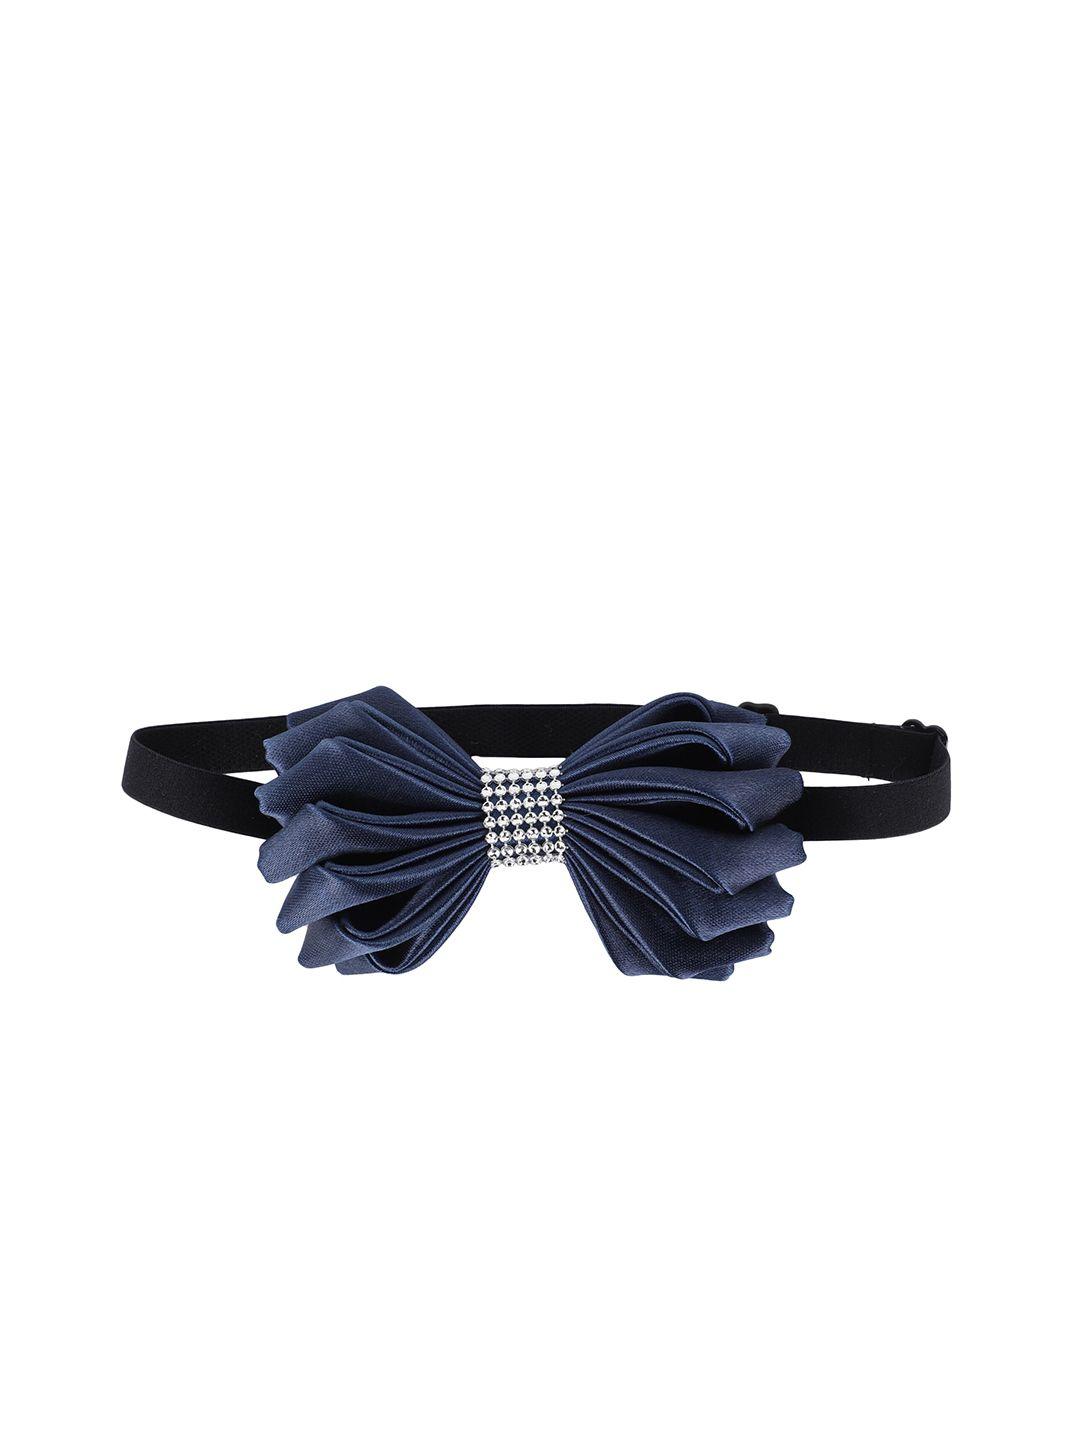 alvaro castagnino men navy blue & silver-toned bow tie